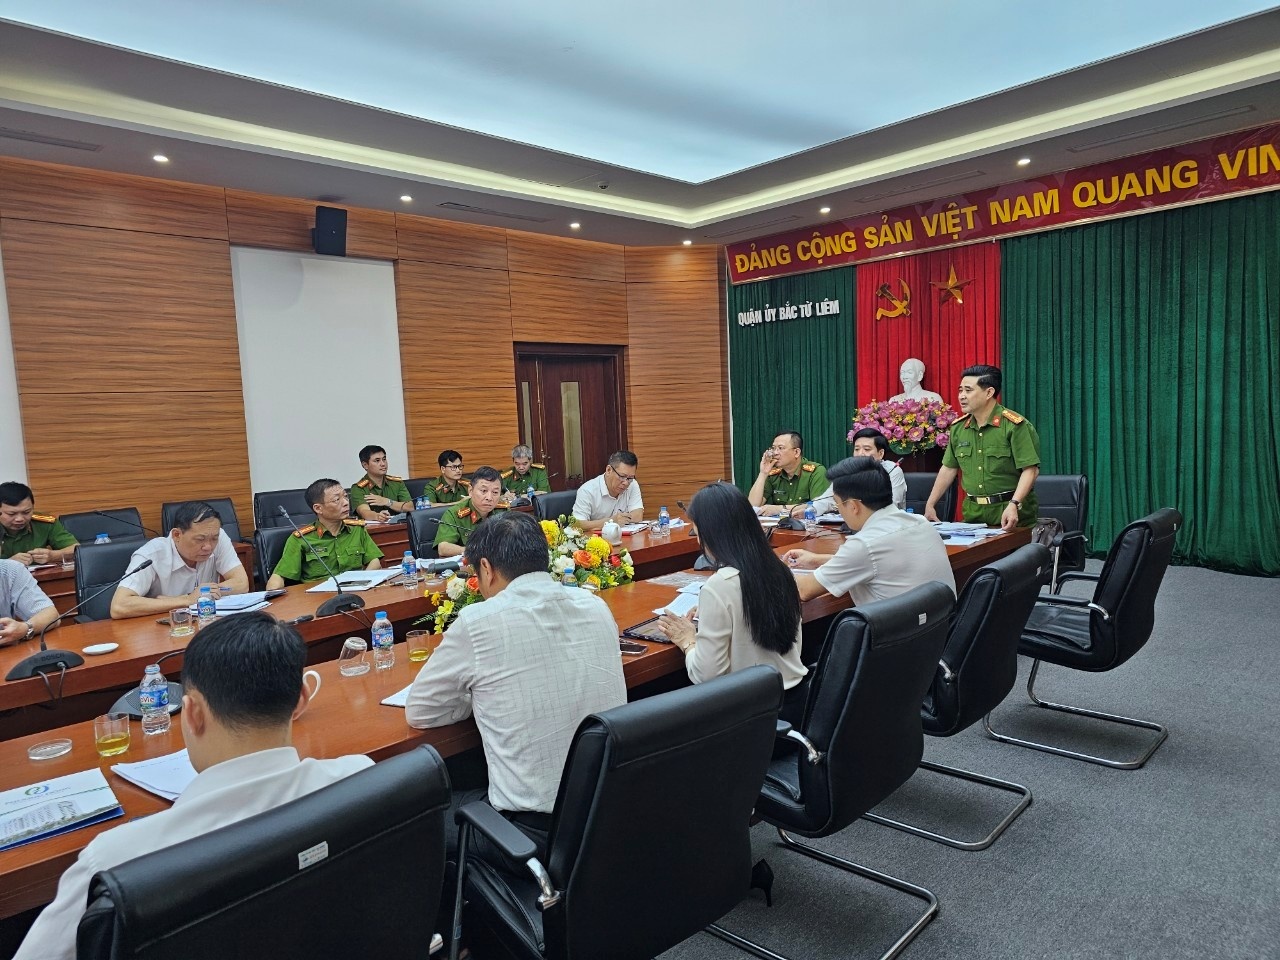 Hà Nội: Quận Bắc Từ Liêm rà soát, đánh giá tiến độ chất lượng, hiệu quả công tác PCCC&CNCH